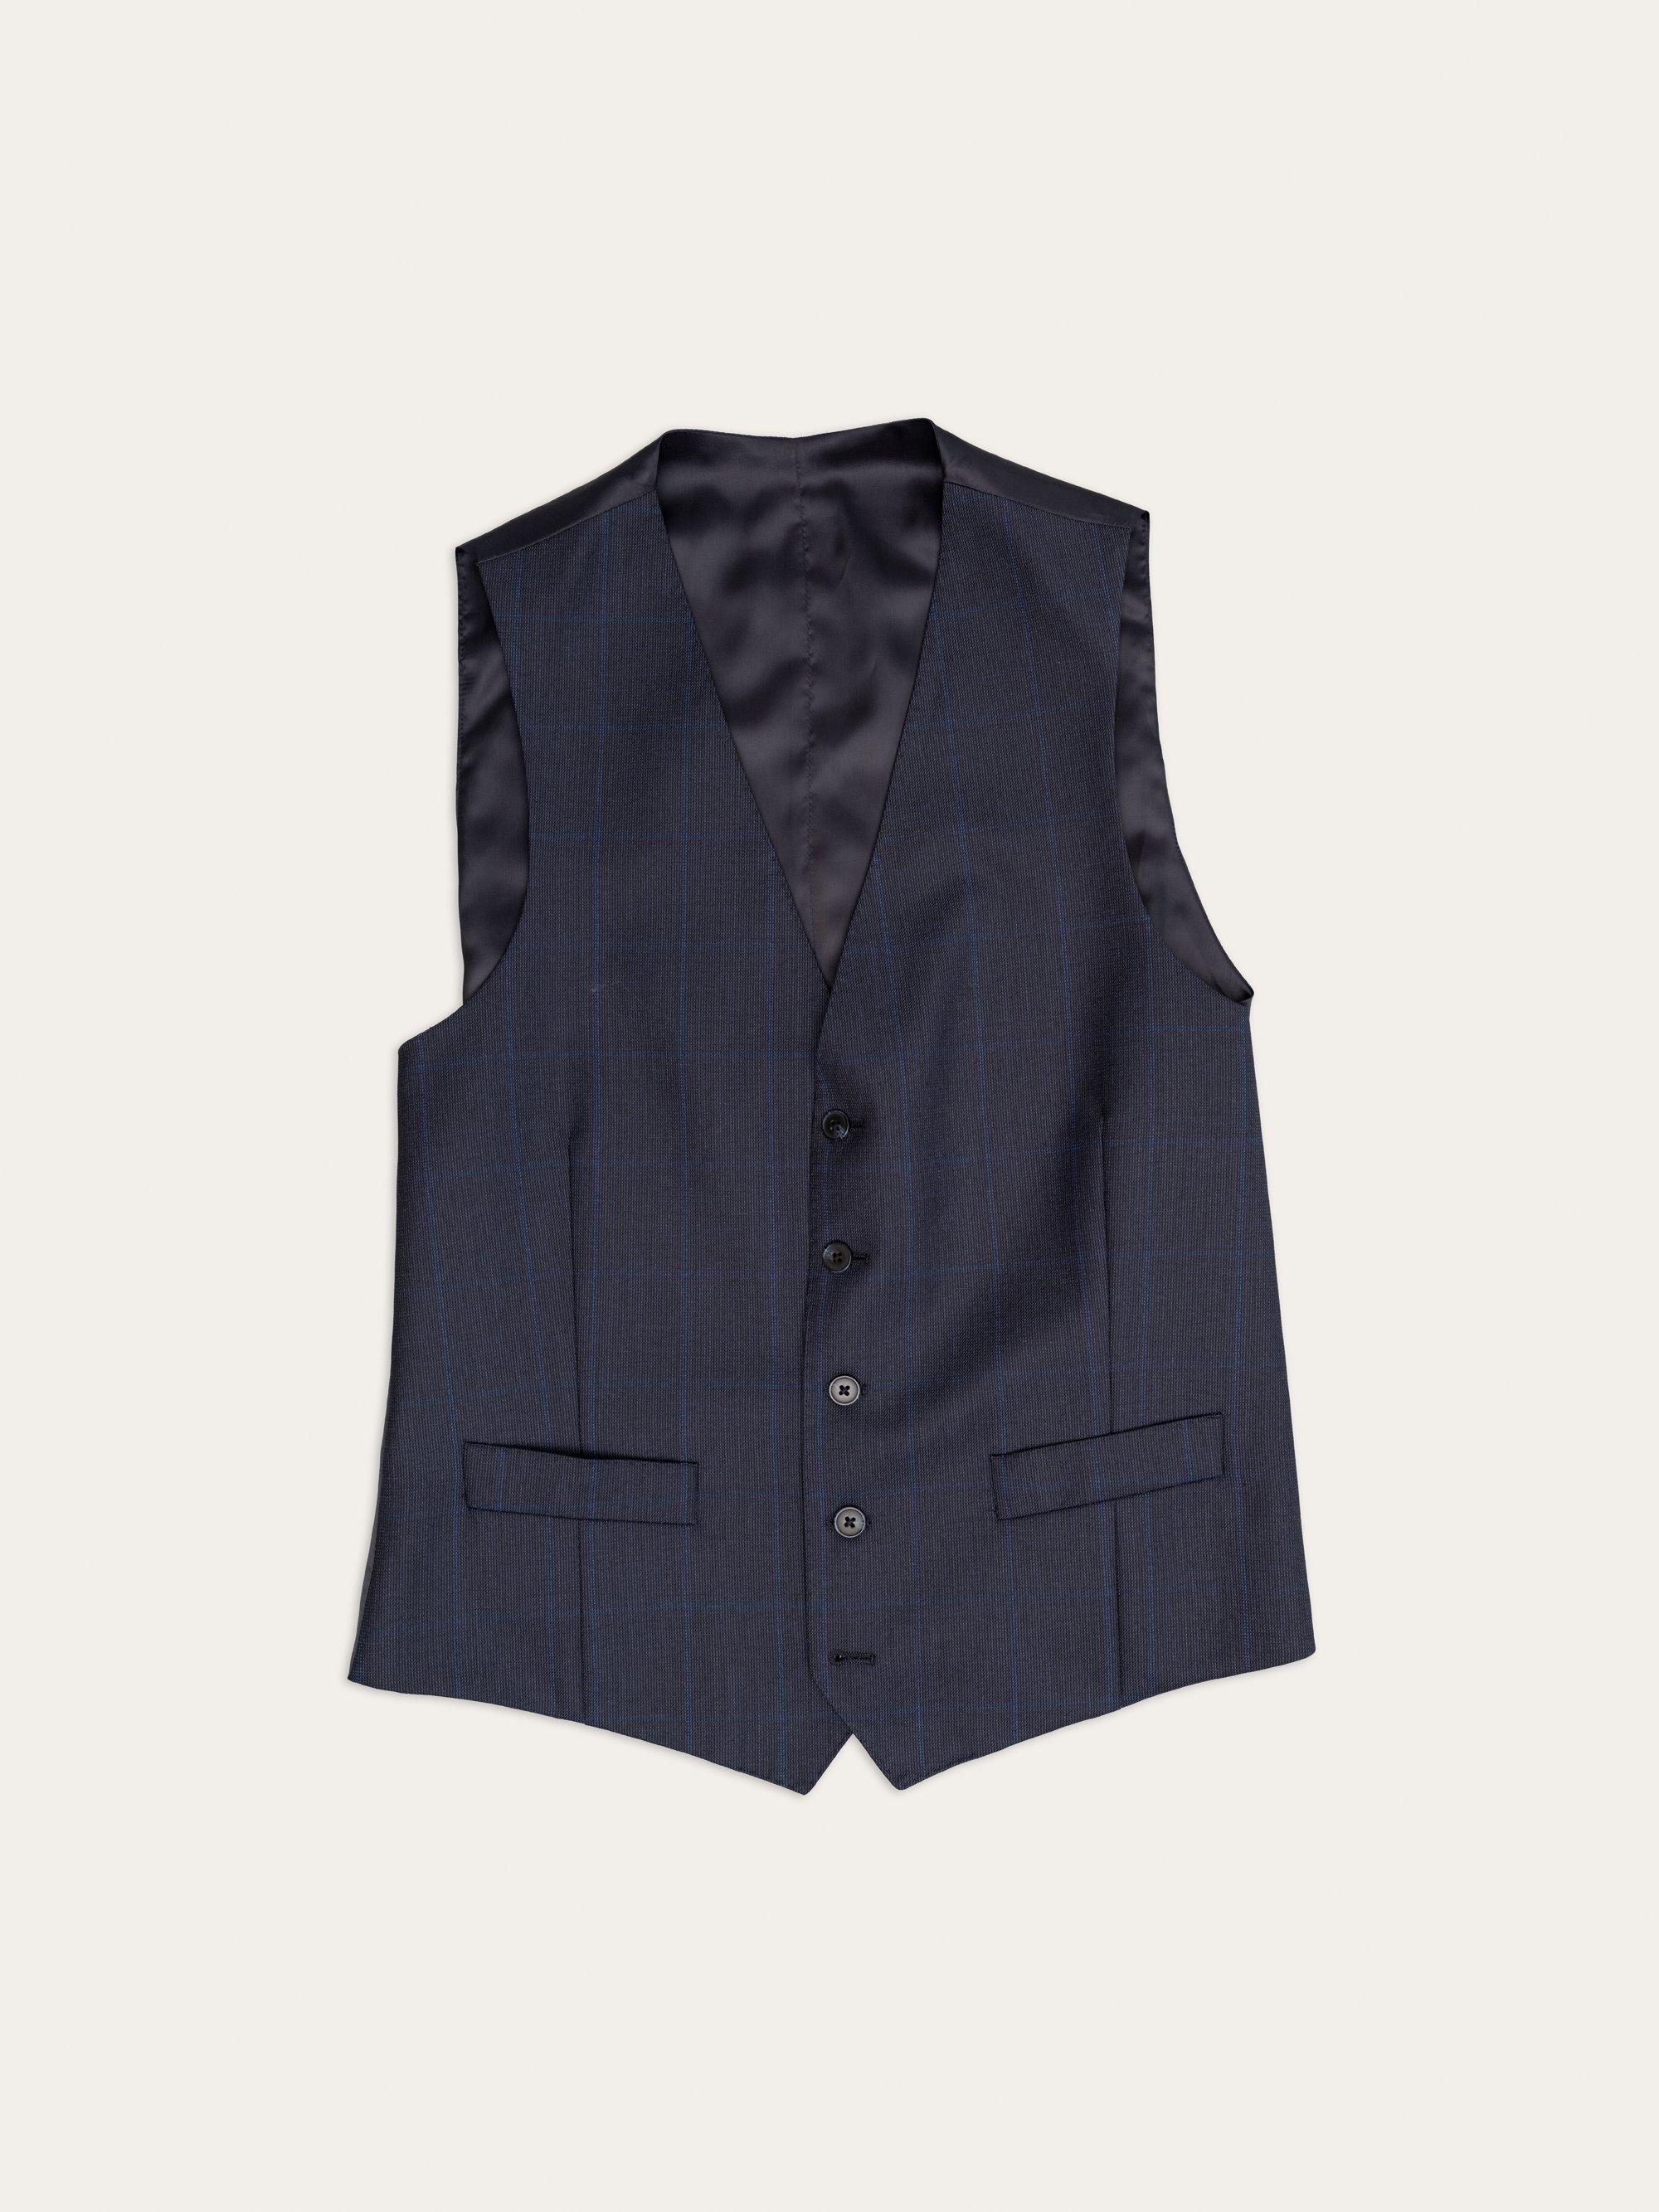 jerome clothiers - waistcoats - 6.jpg